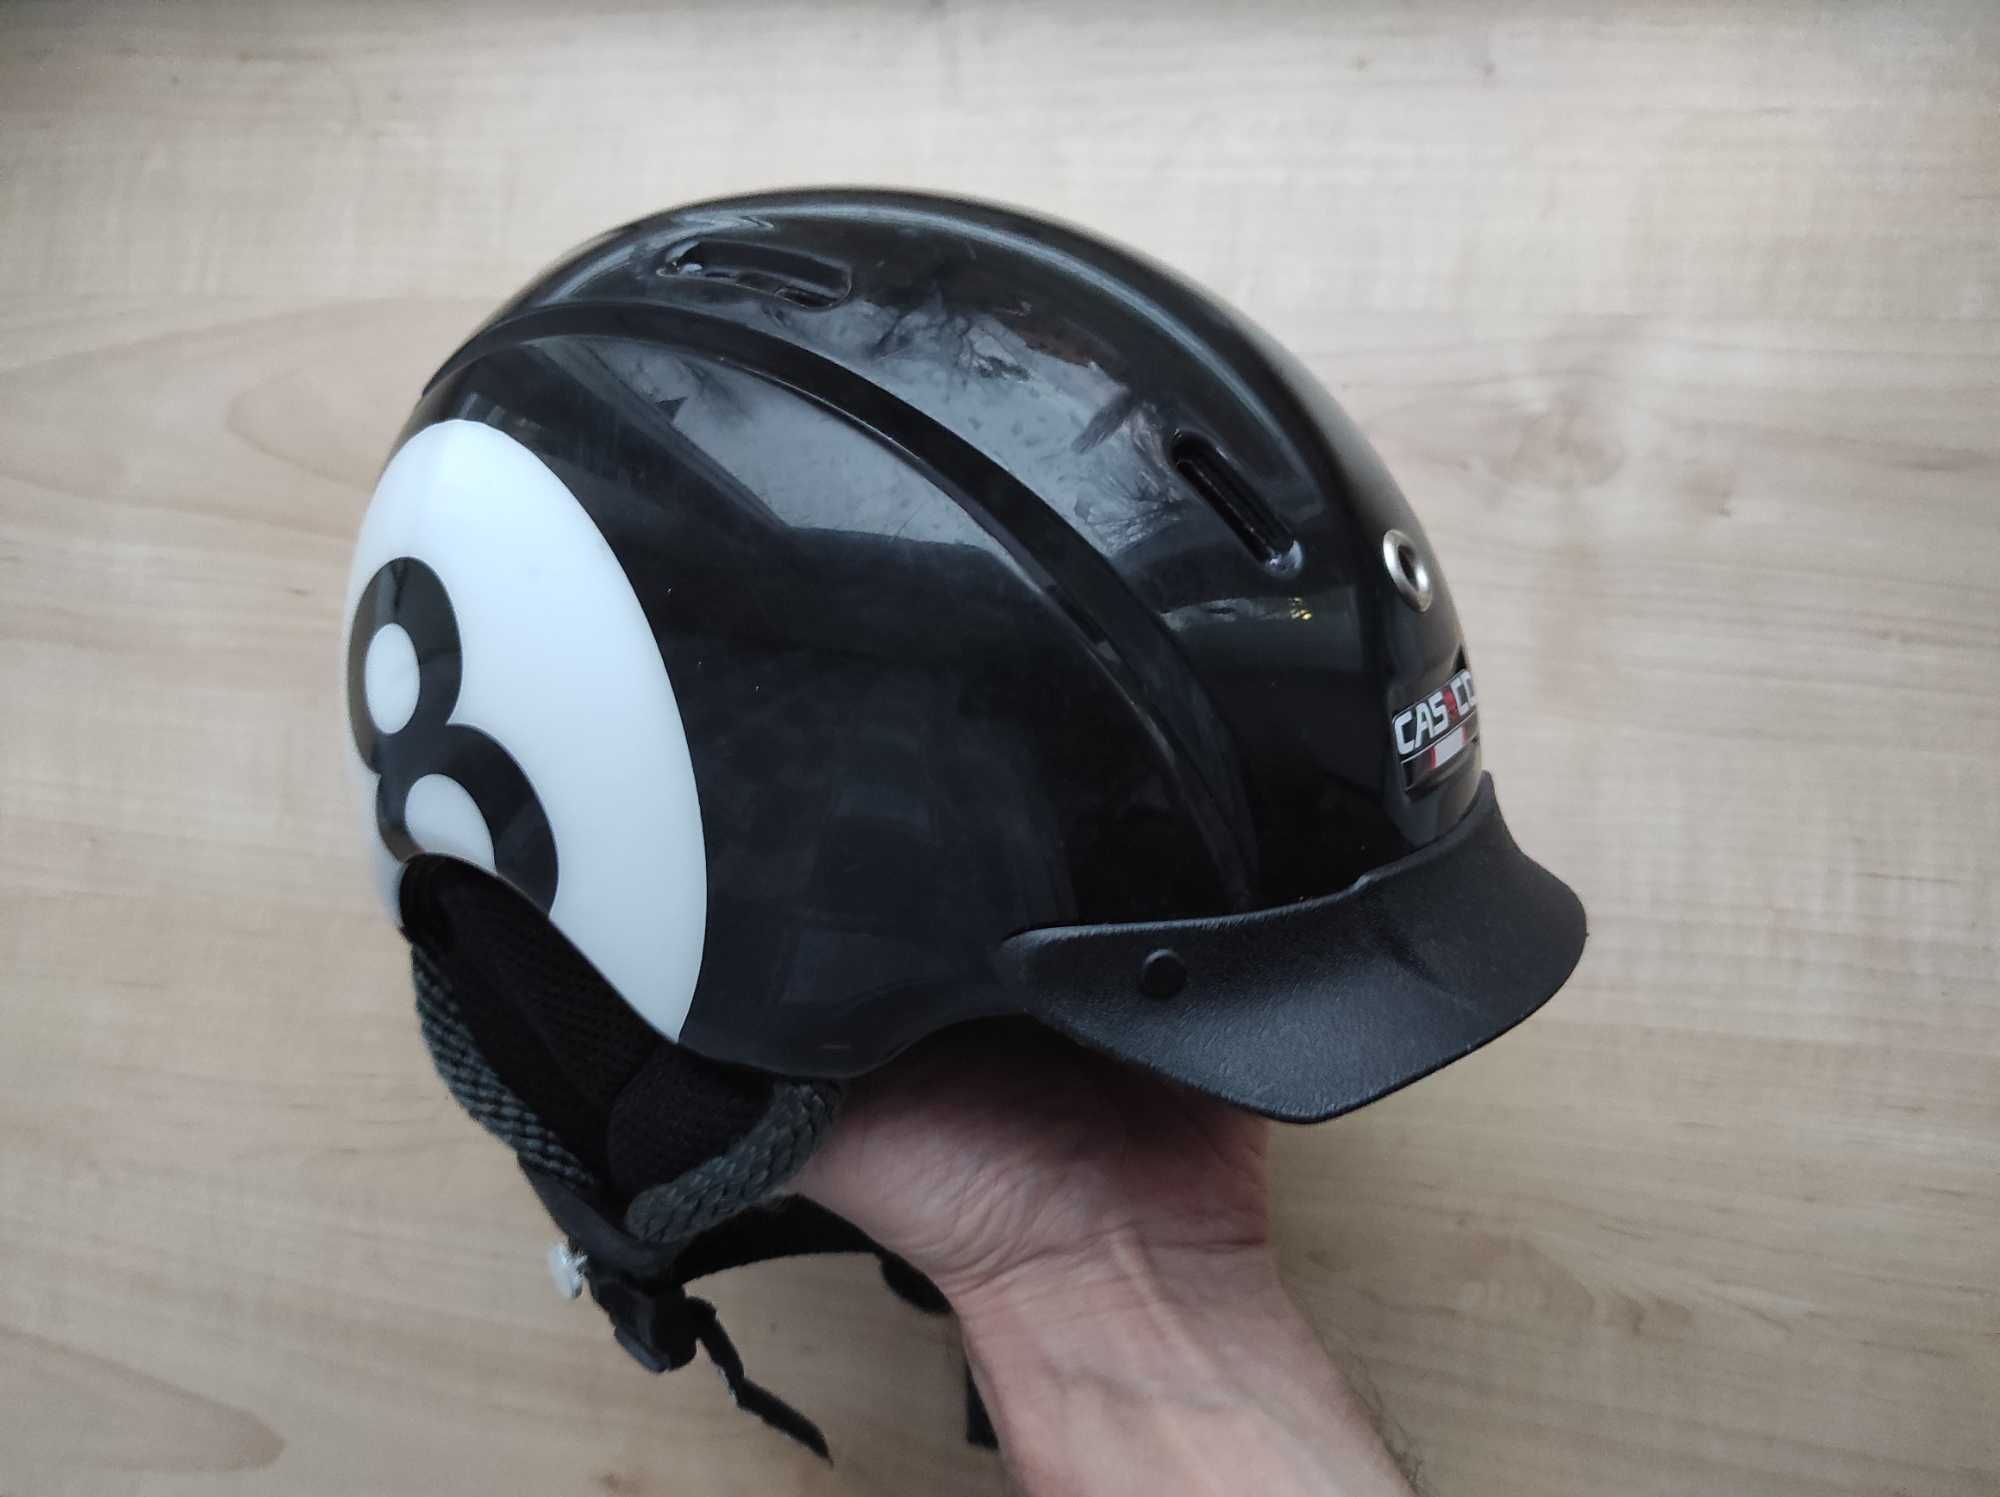 Горнолыжный шлем Cas-co Mini Pro разм. 50-55см сноубордический детский